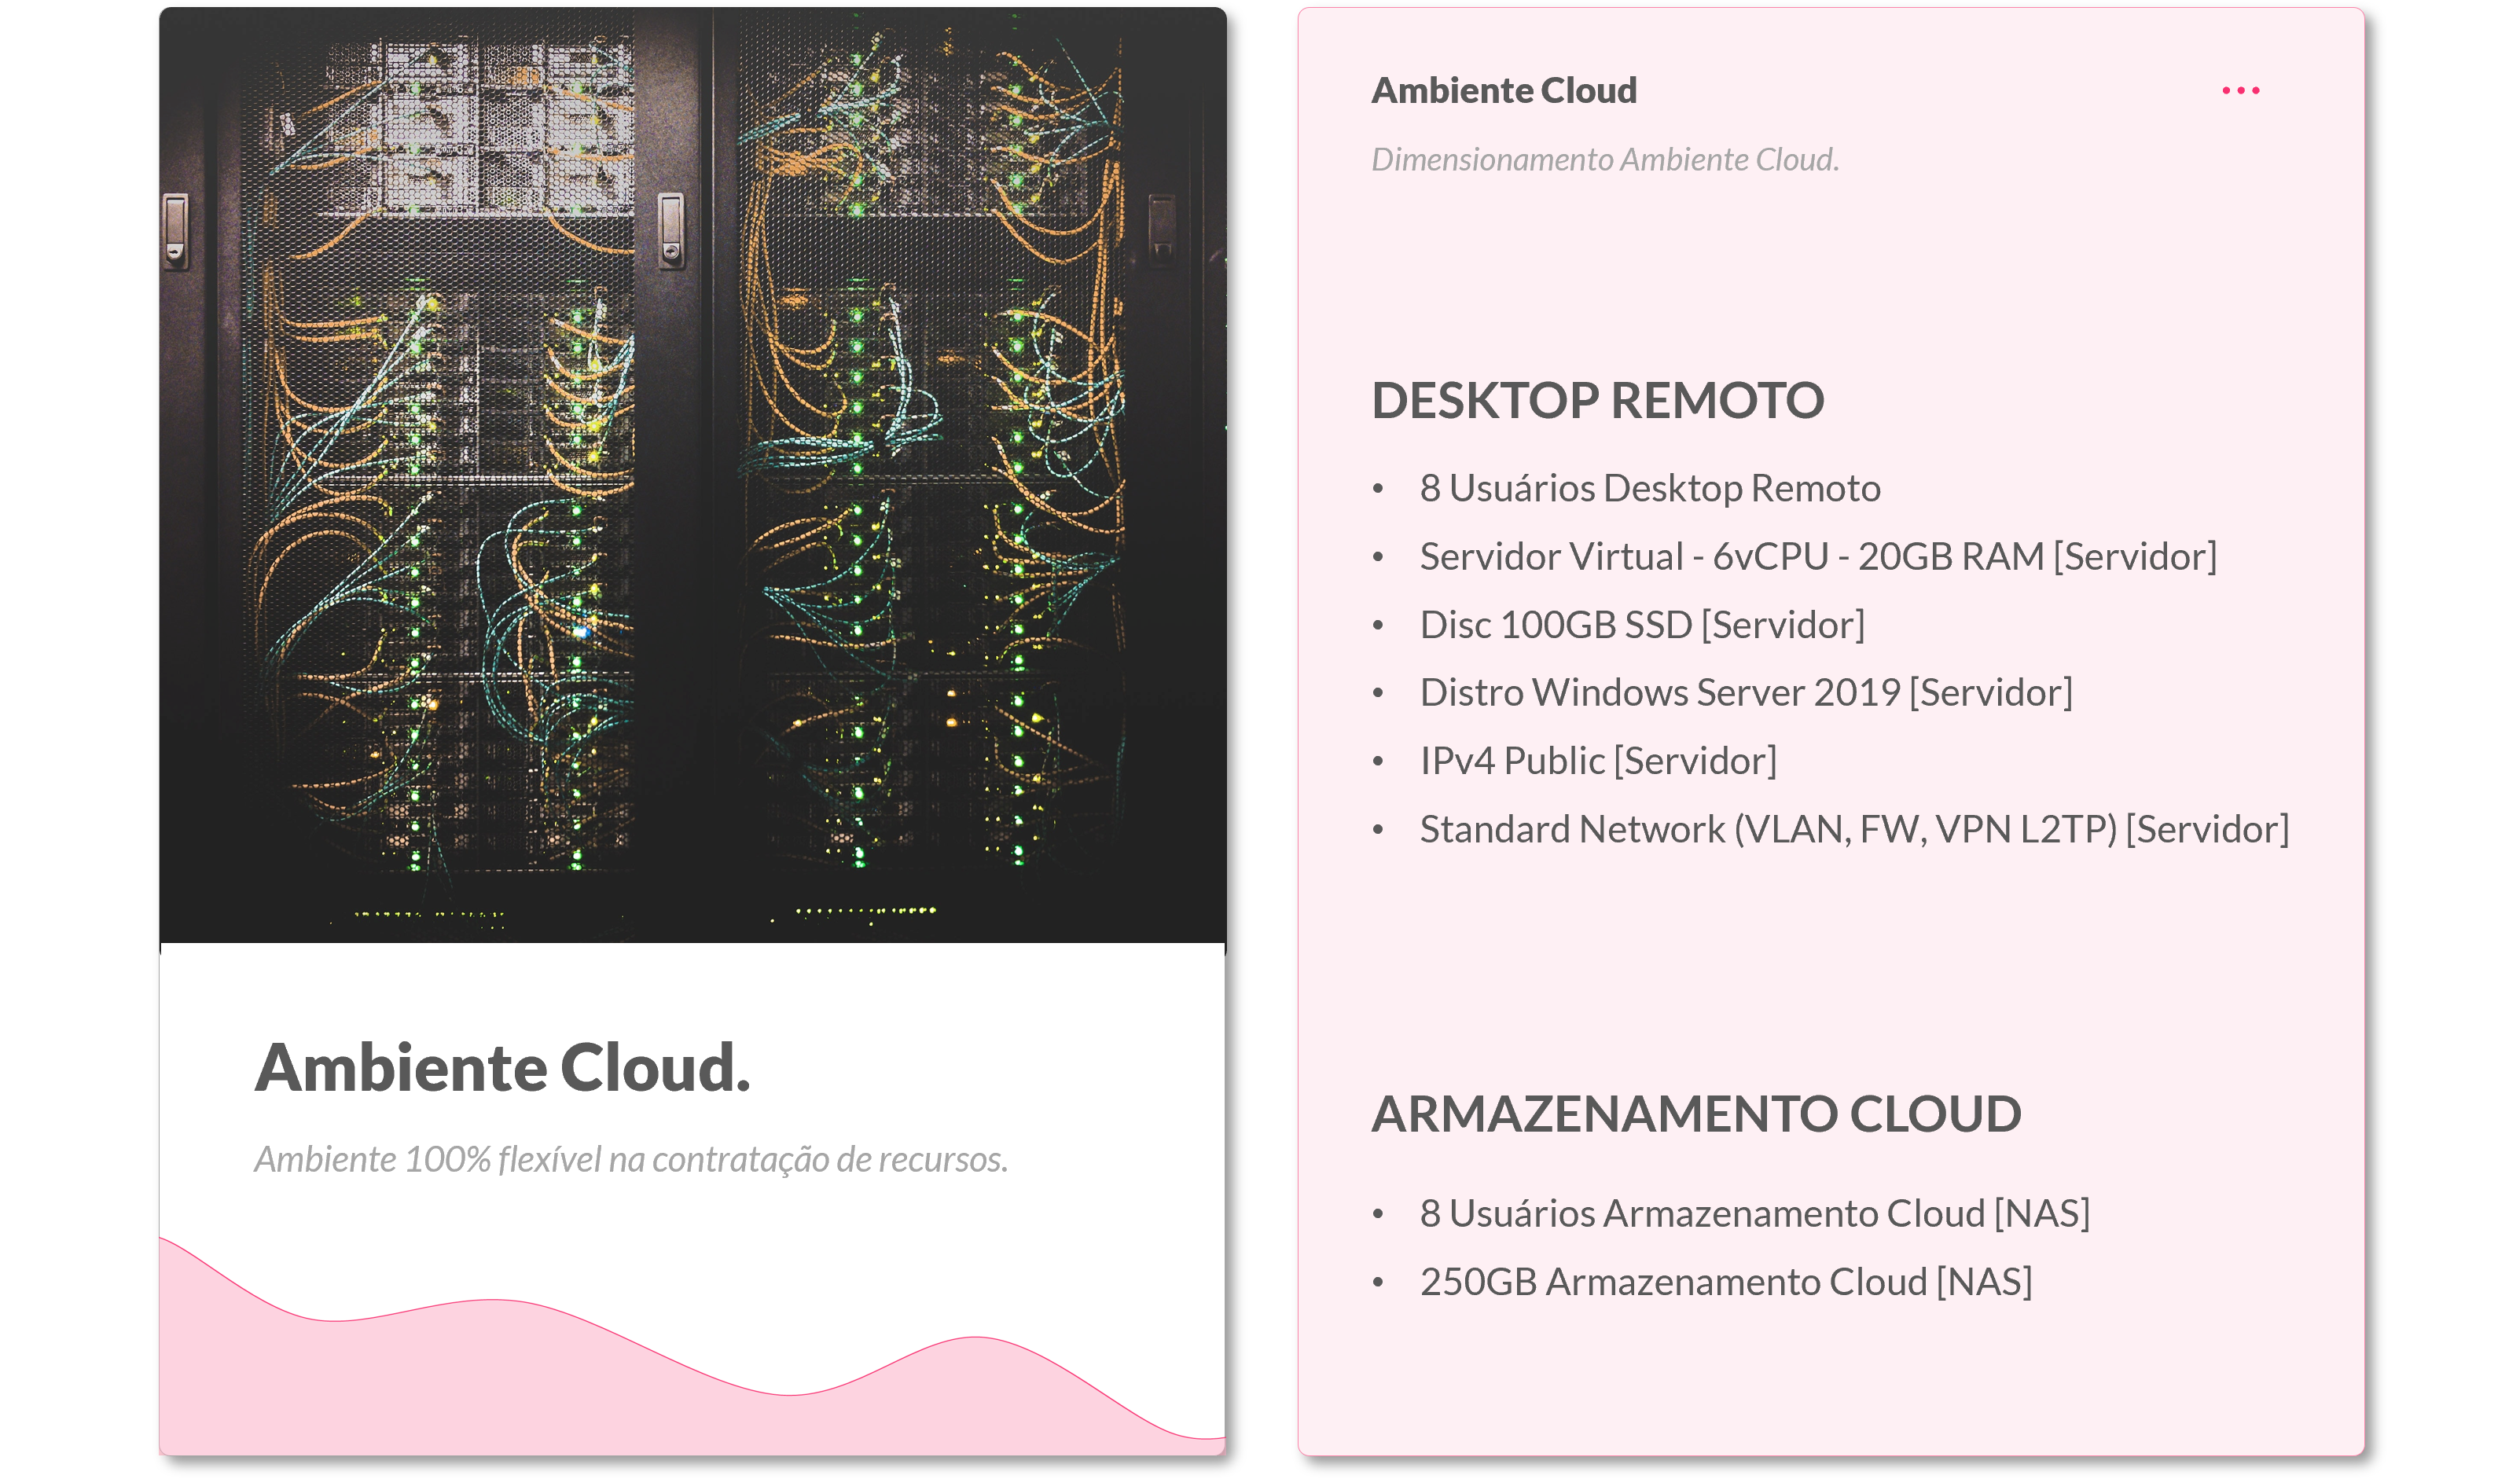 Opção 2. Características do dimensionamento de um ambiente na nuvem (Desktop Remoto e Armazenamento Cloud).